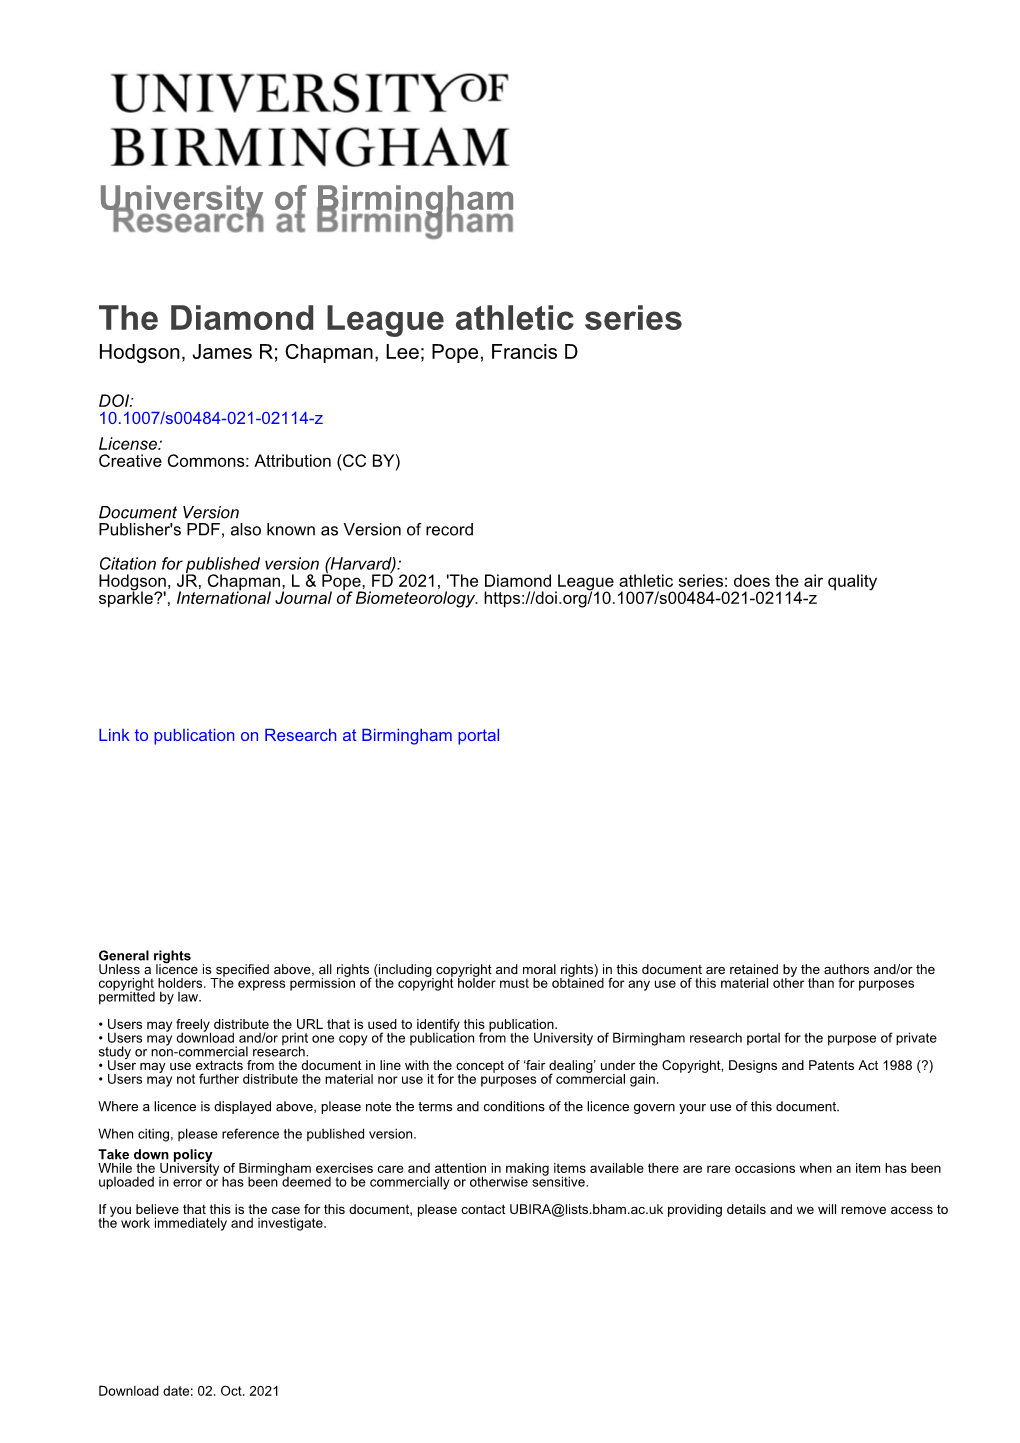 The Diamond League Athletic Series Hodgson, James R; Chapman, Lee; Pope, Francis D